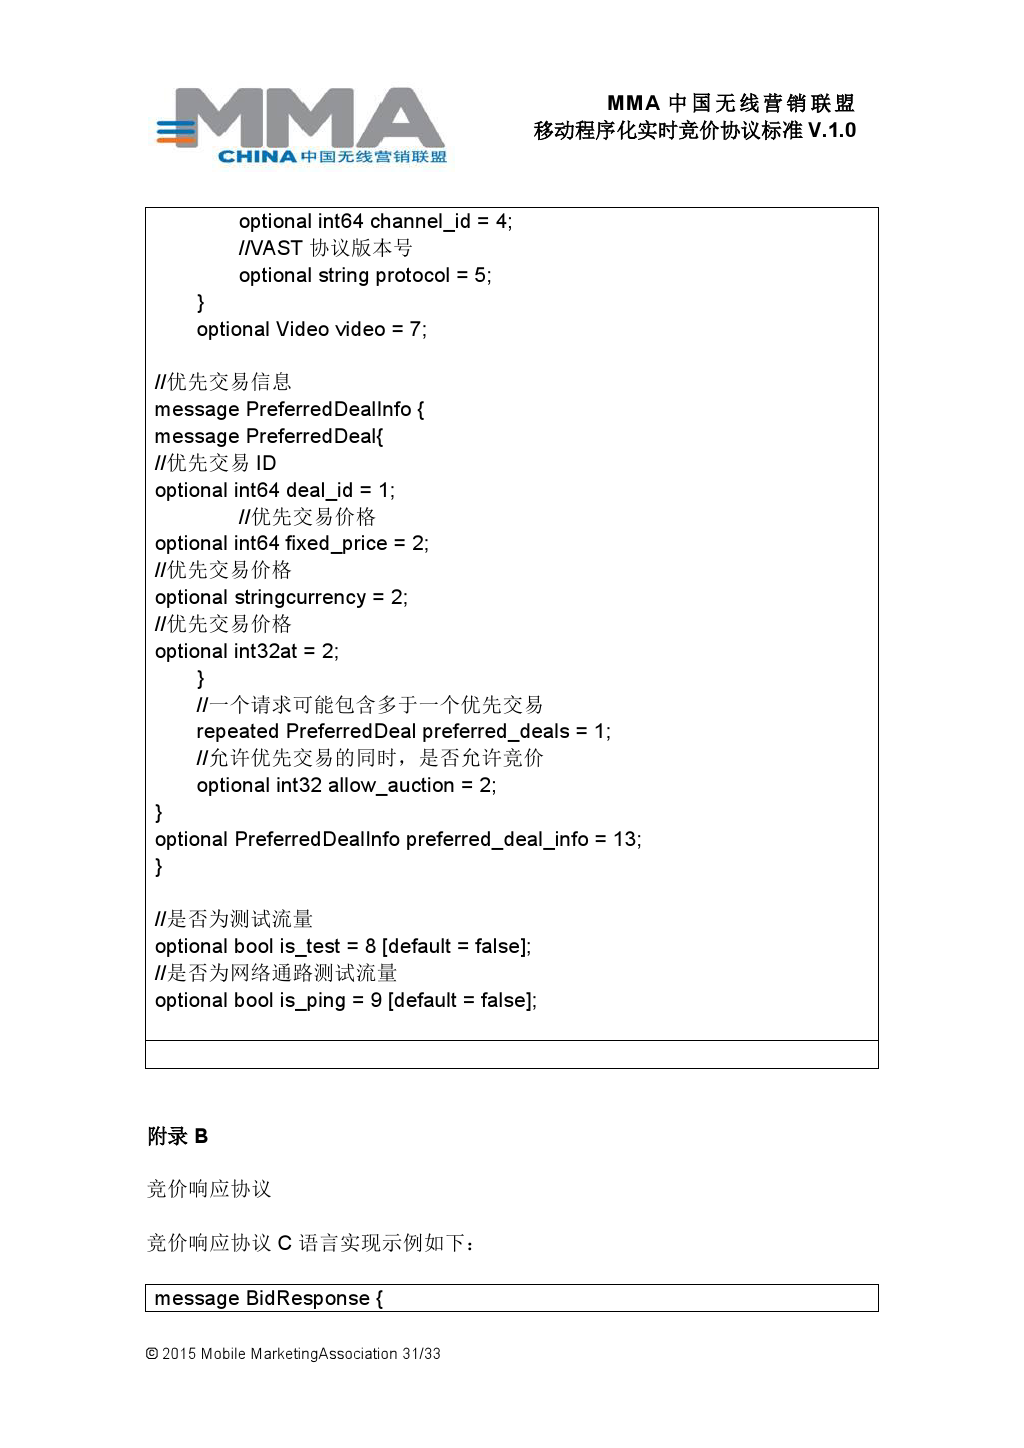 MMA中国无线营销联盟移动程序化实时竞价协议标准V.1.0_000032